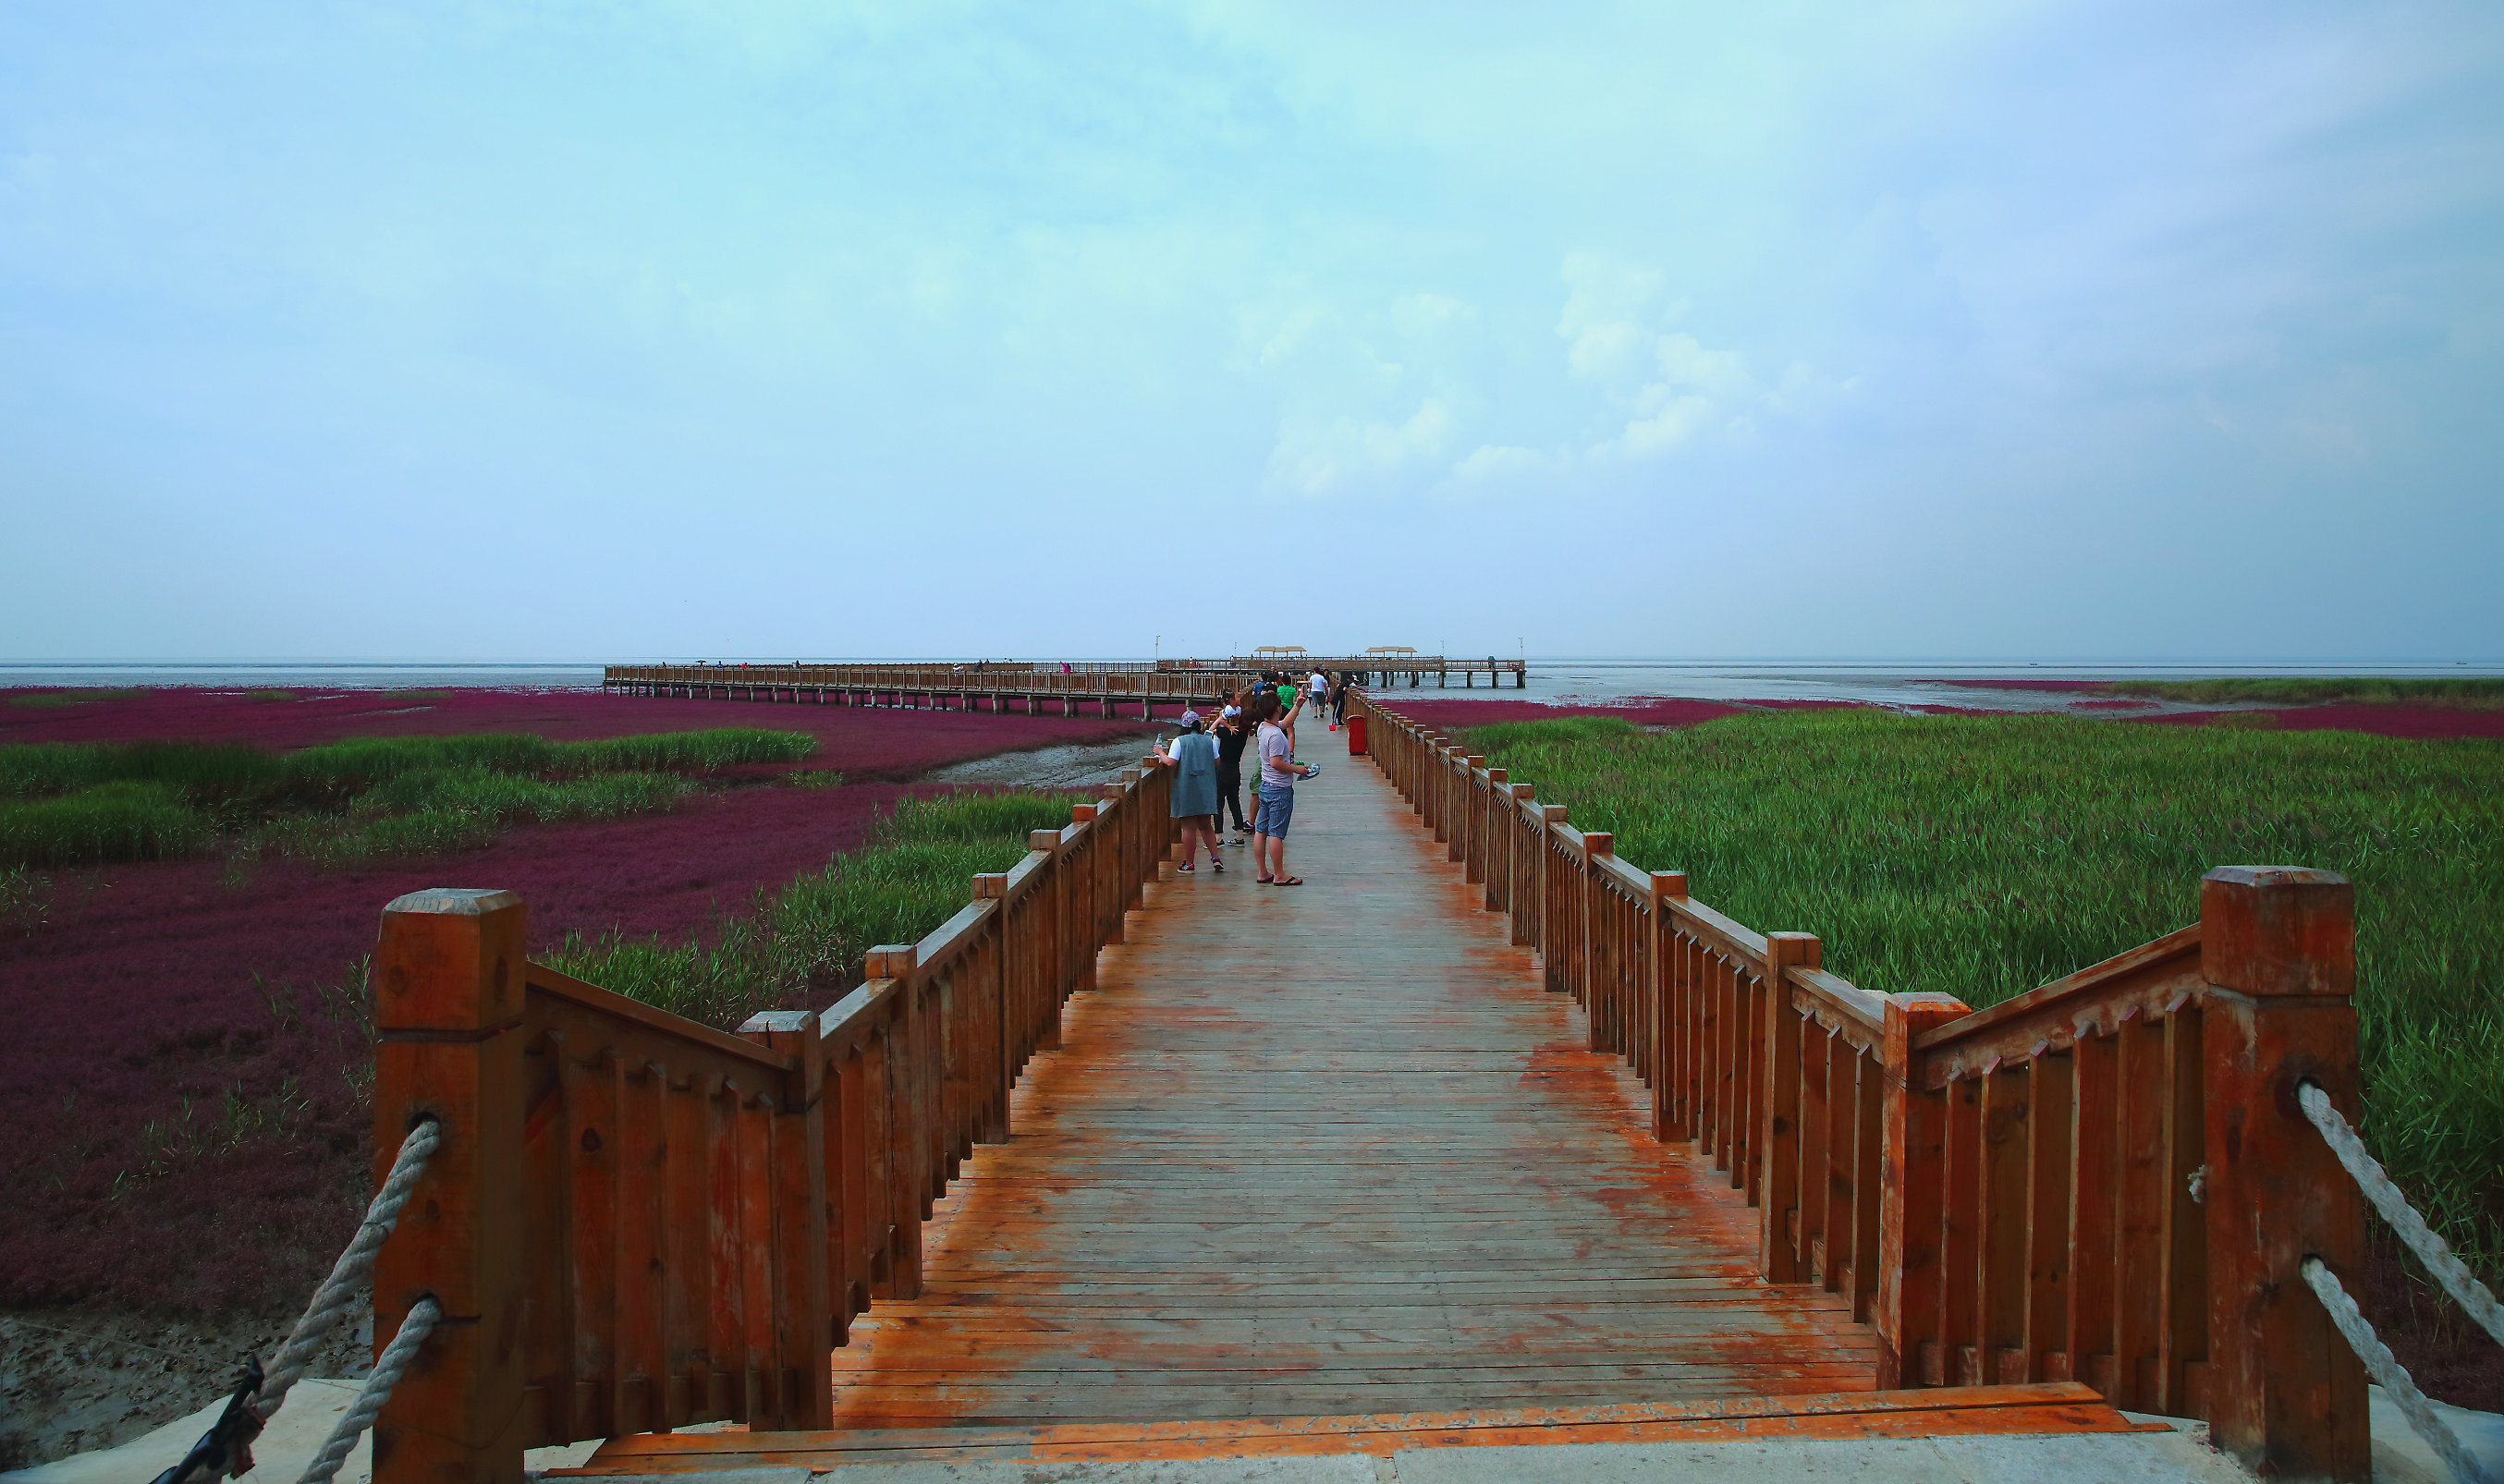 蓬溪红海景区图片图片